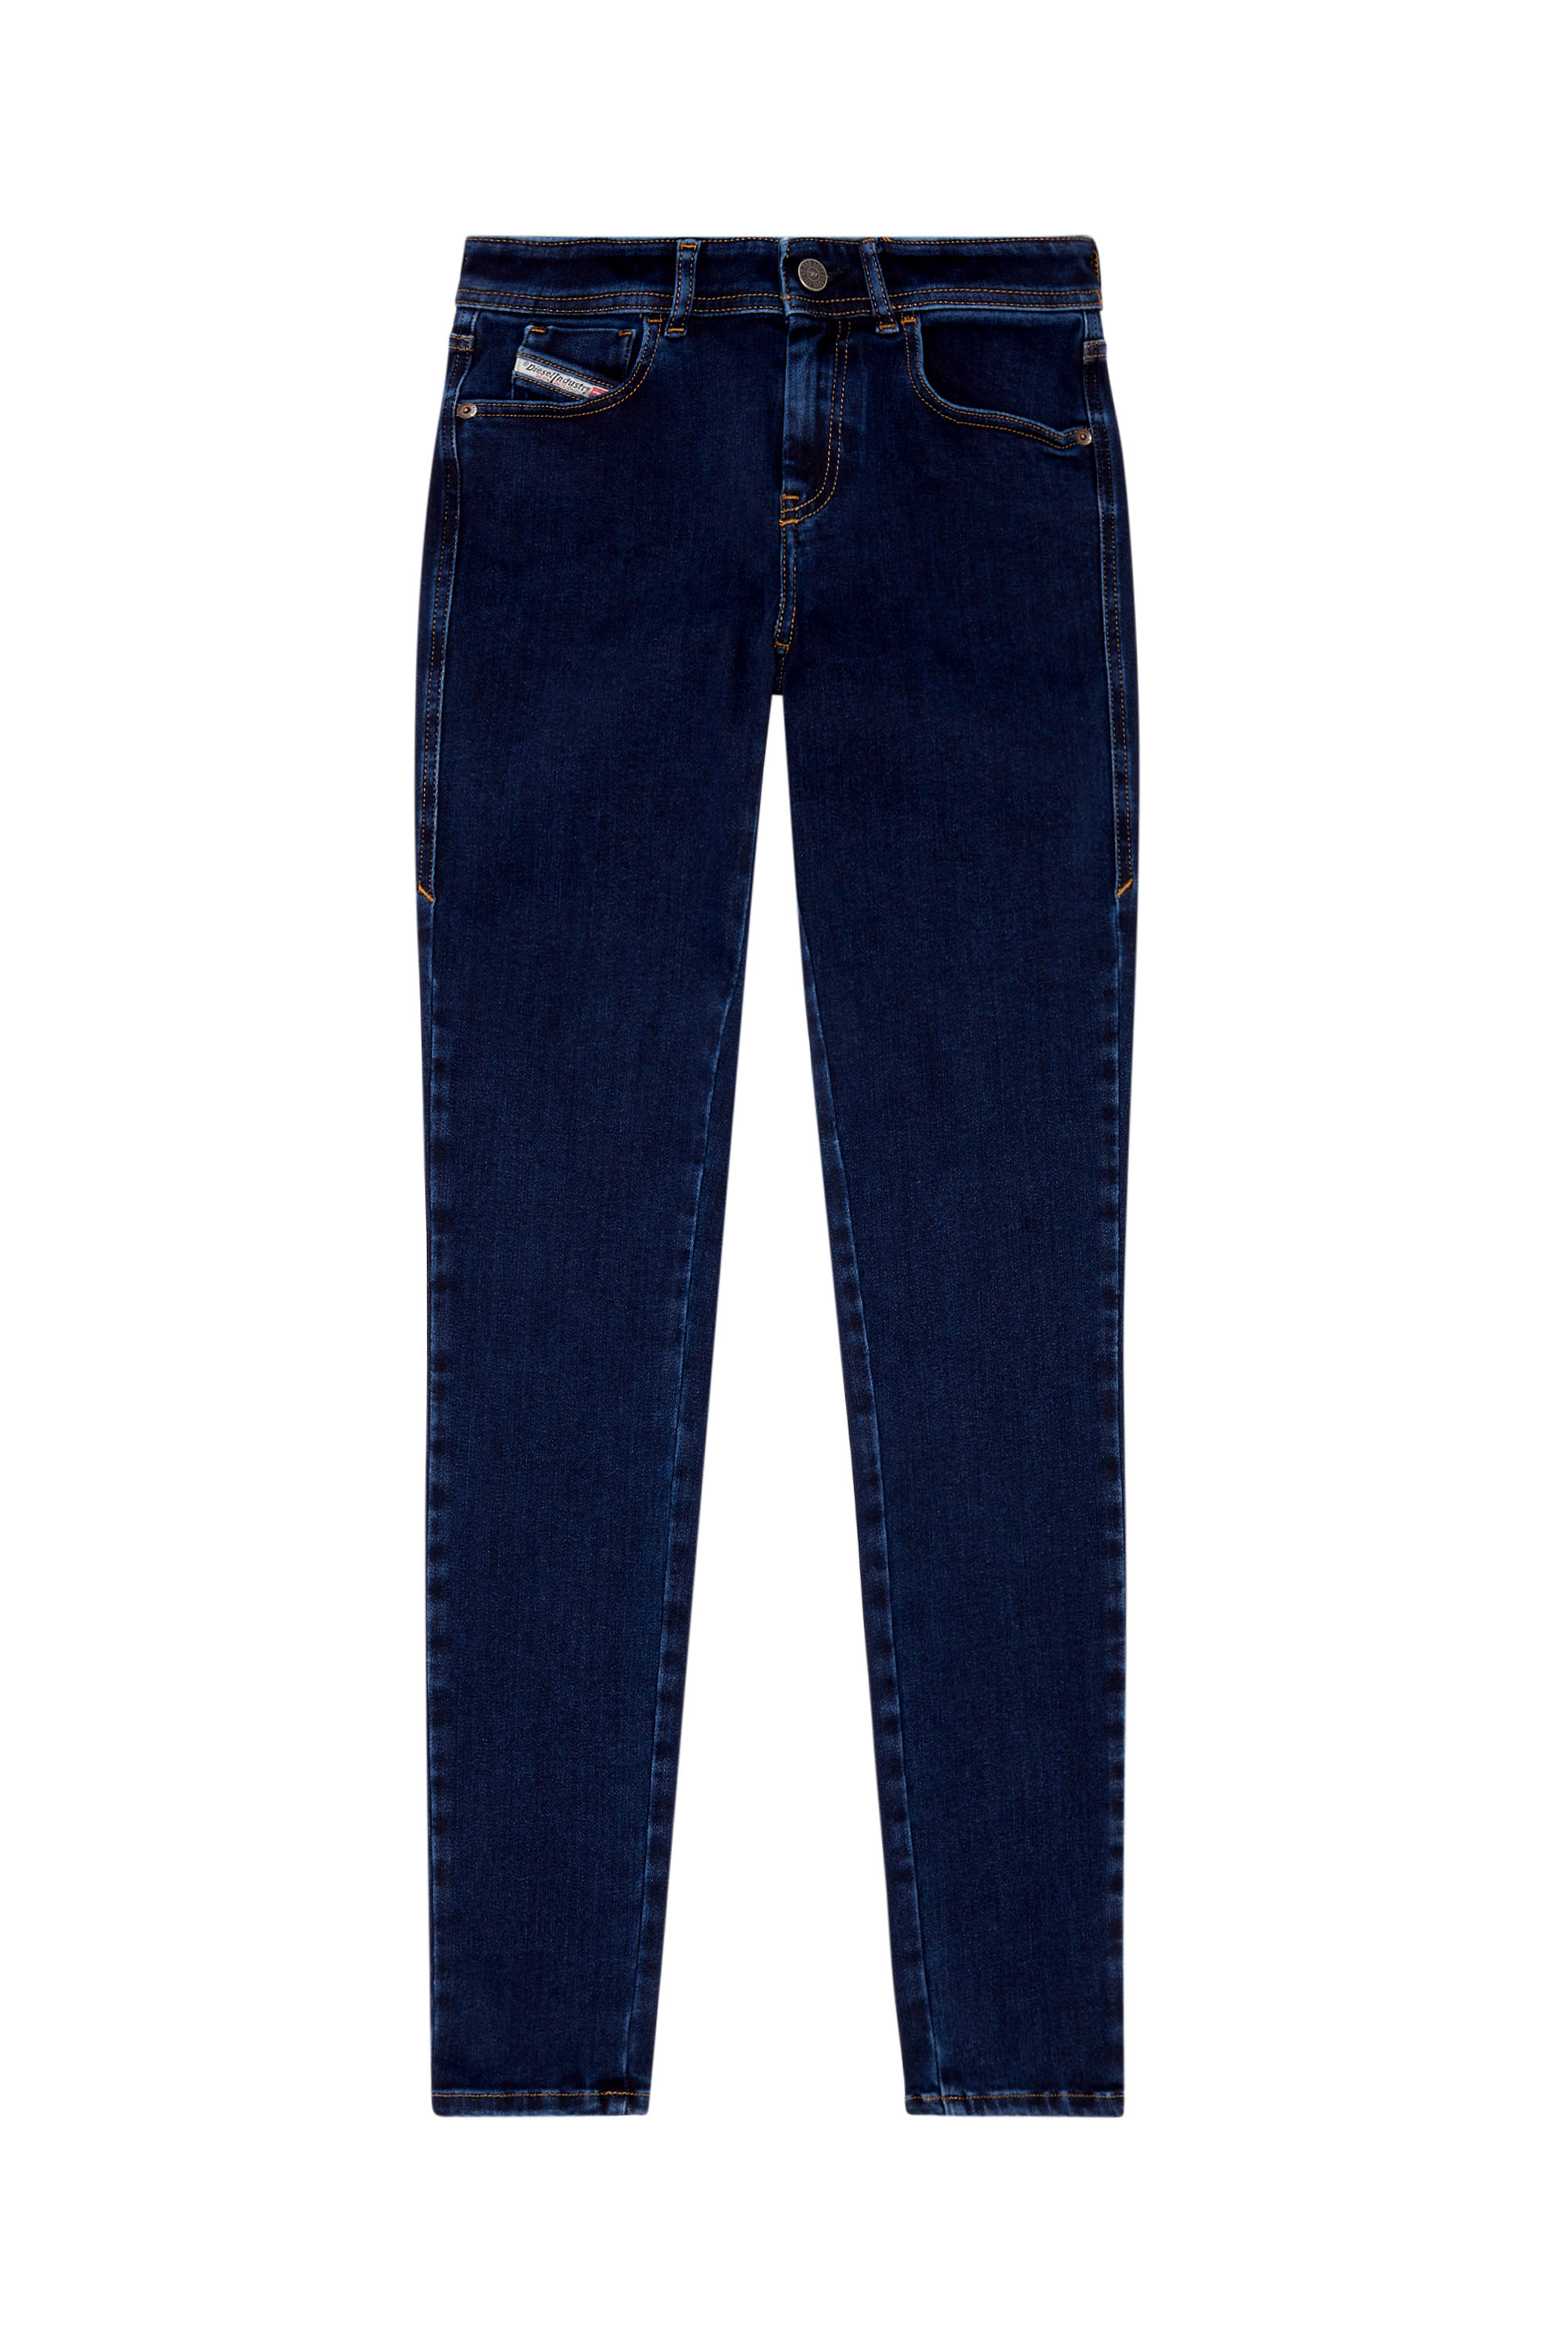 Diesel - Super skinny Jeans 2017 Slandy 09H80, Dark Blue - Image 3